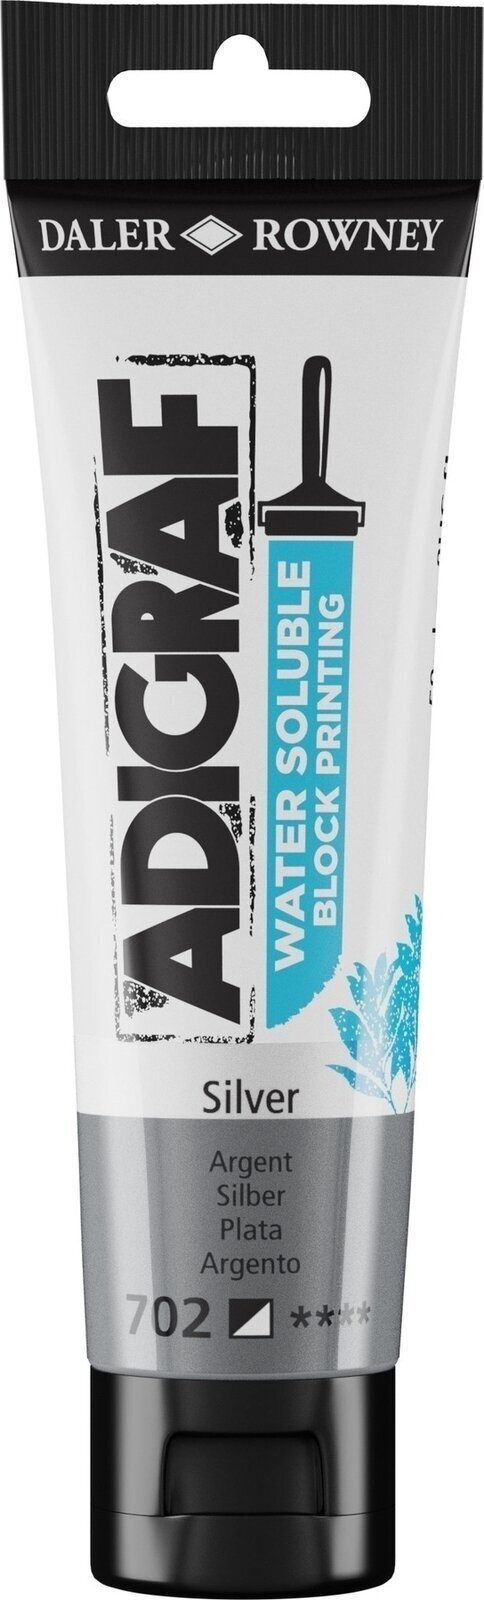 Verf voor linosnede Daler Rowney Adigraf Block Printing Water Soluble Colour Verf voor linosnede Silver 59 ml